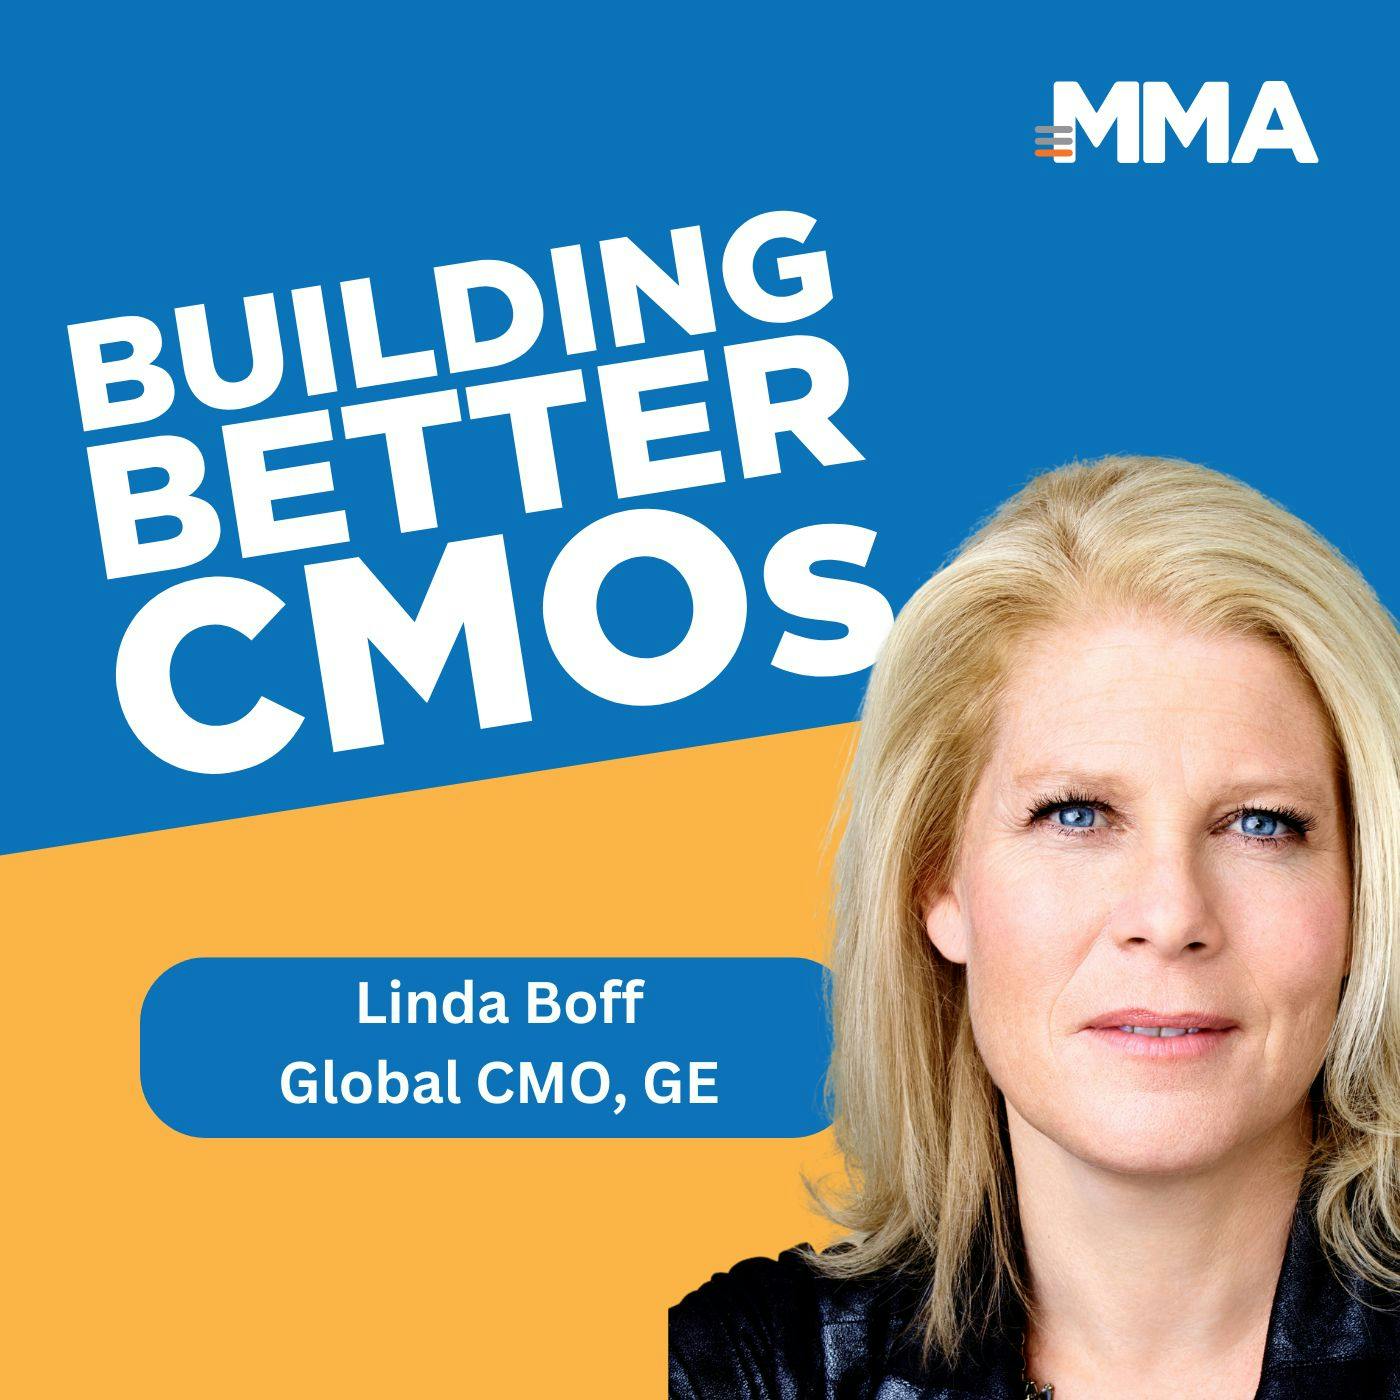 Linda Boff, Global CMO at GE: Servant of Purpose